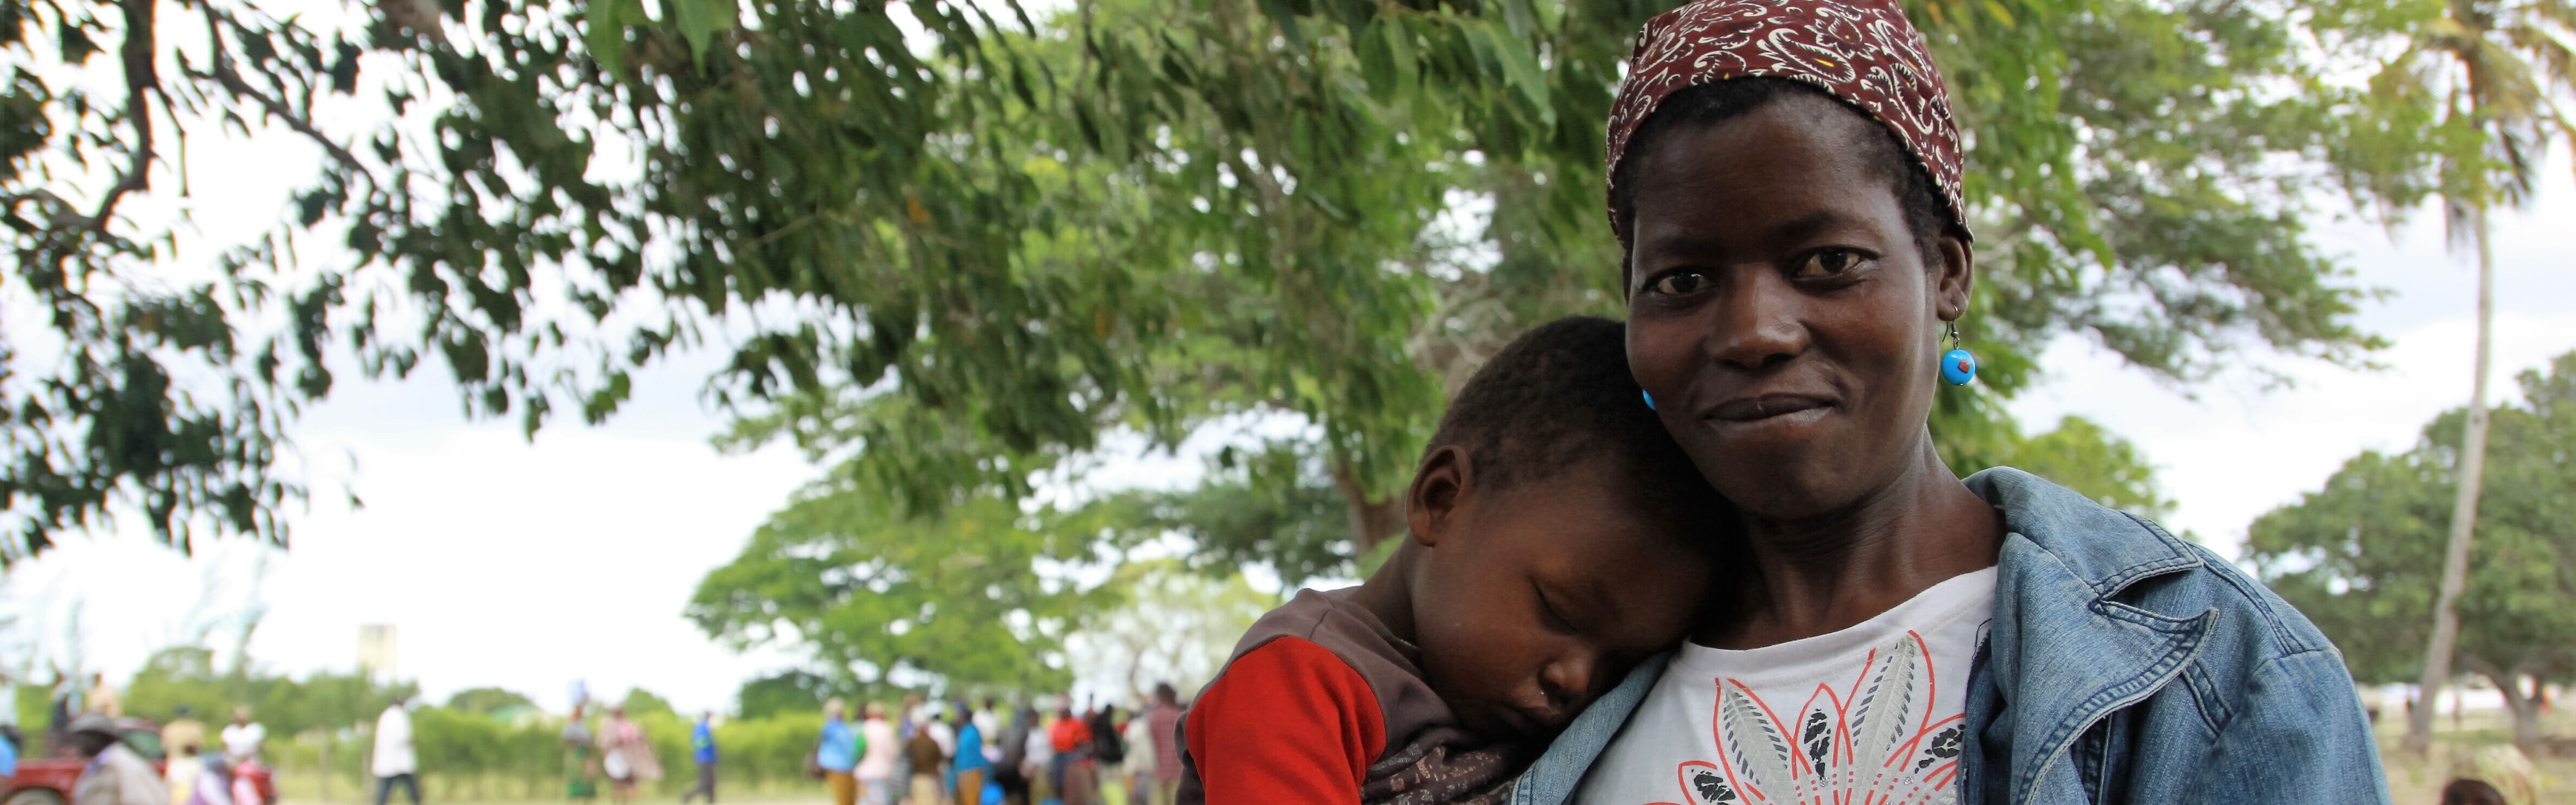 Eine Mama trägt ihren kleinen Jungen auf dem Arm. Während der schweren Dürre im süden Afrikas werden Lebensmittel und Wasser an betroffene Familien ausgeteilt.